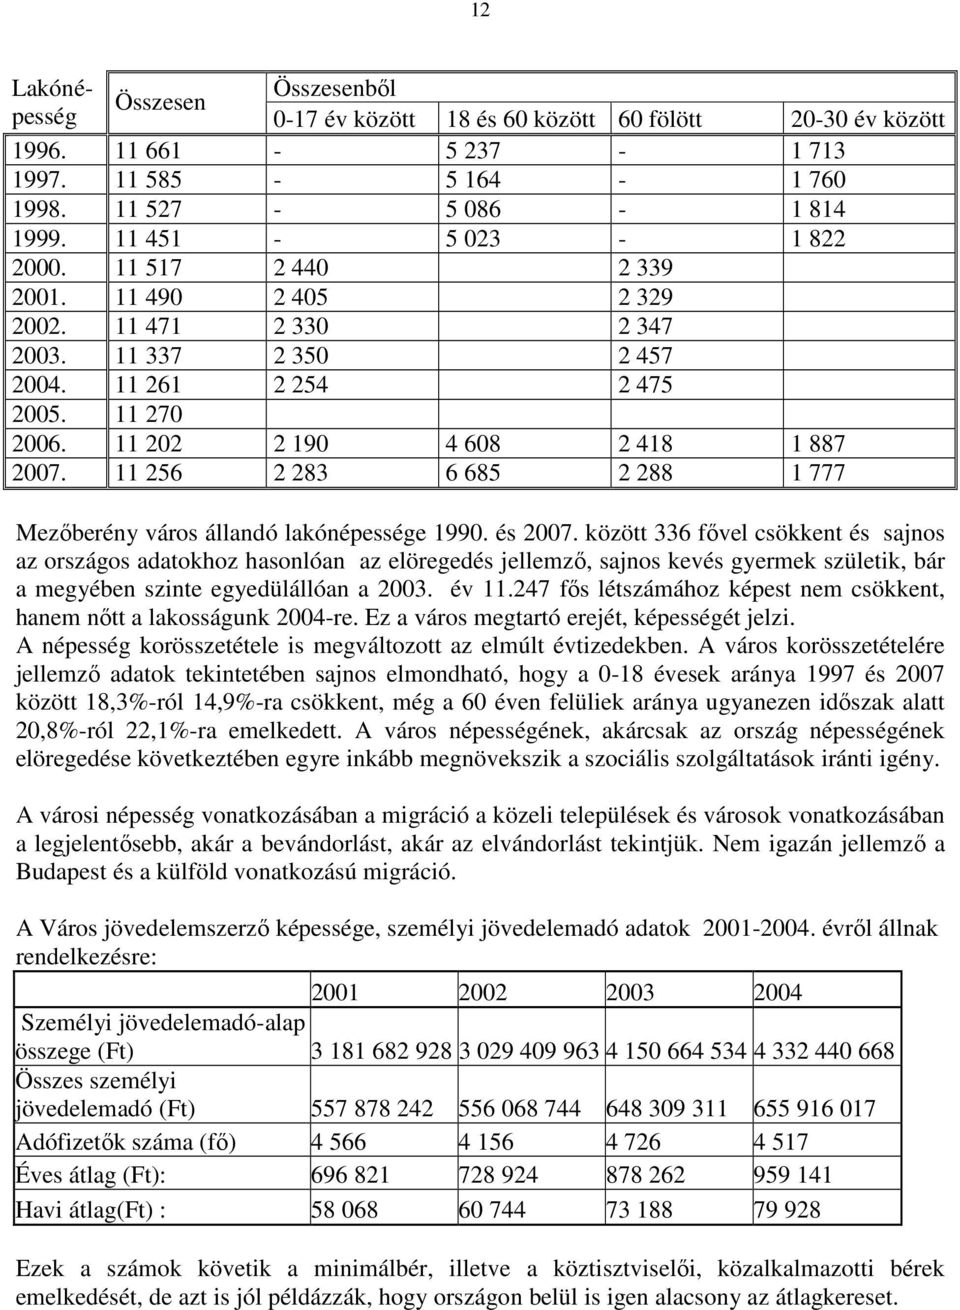 11 256 2 283 6 685 2 288 1 777 Mezıberény város állandó lakónépessége 1990. és 2007.